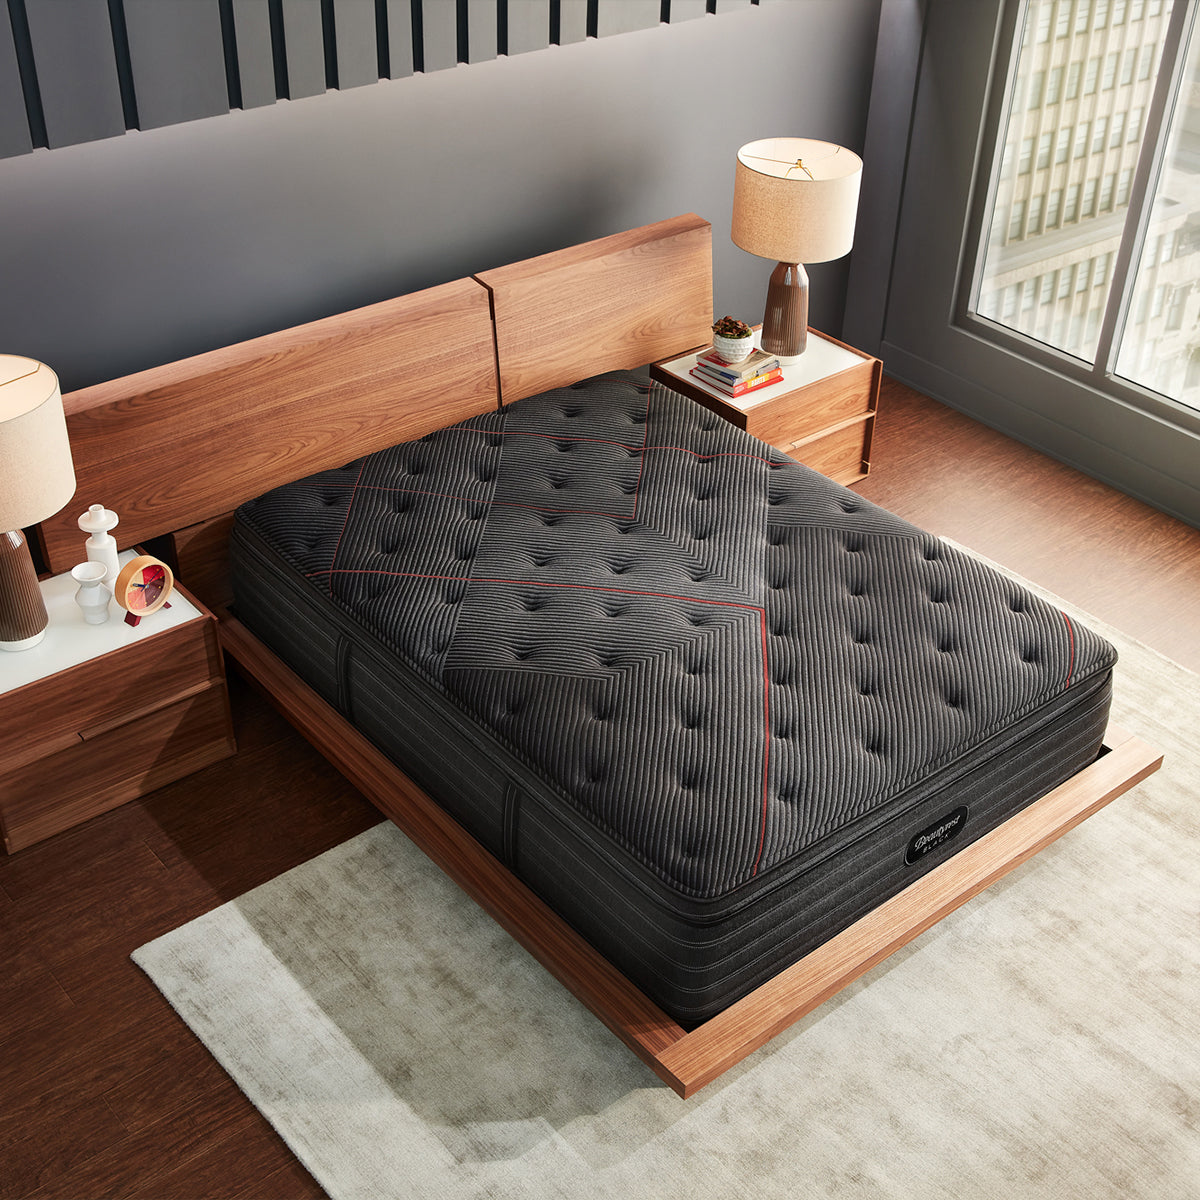 Beautyrest Black C-Class Medium Pillow Top Mattress On Bed Frame Overhead View